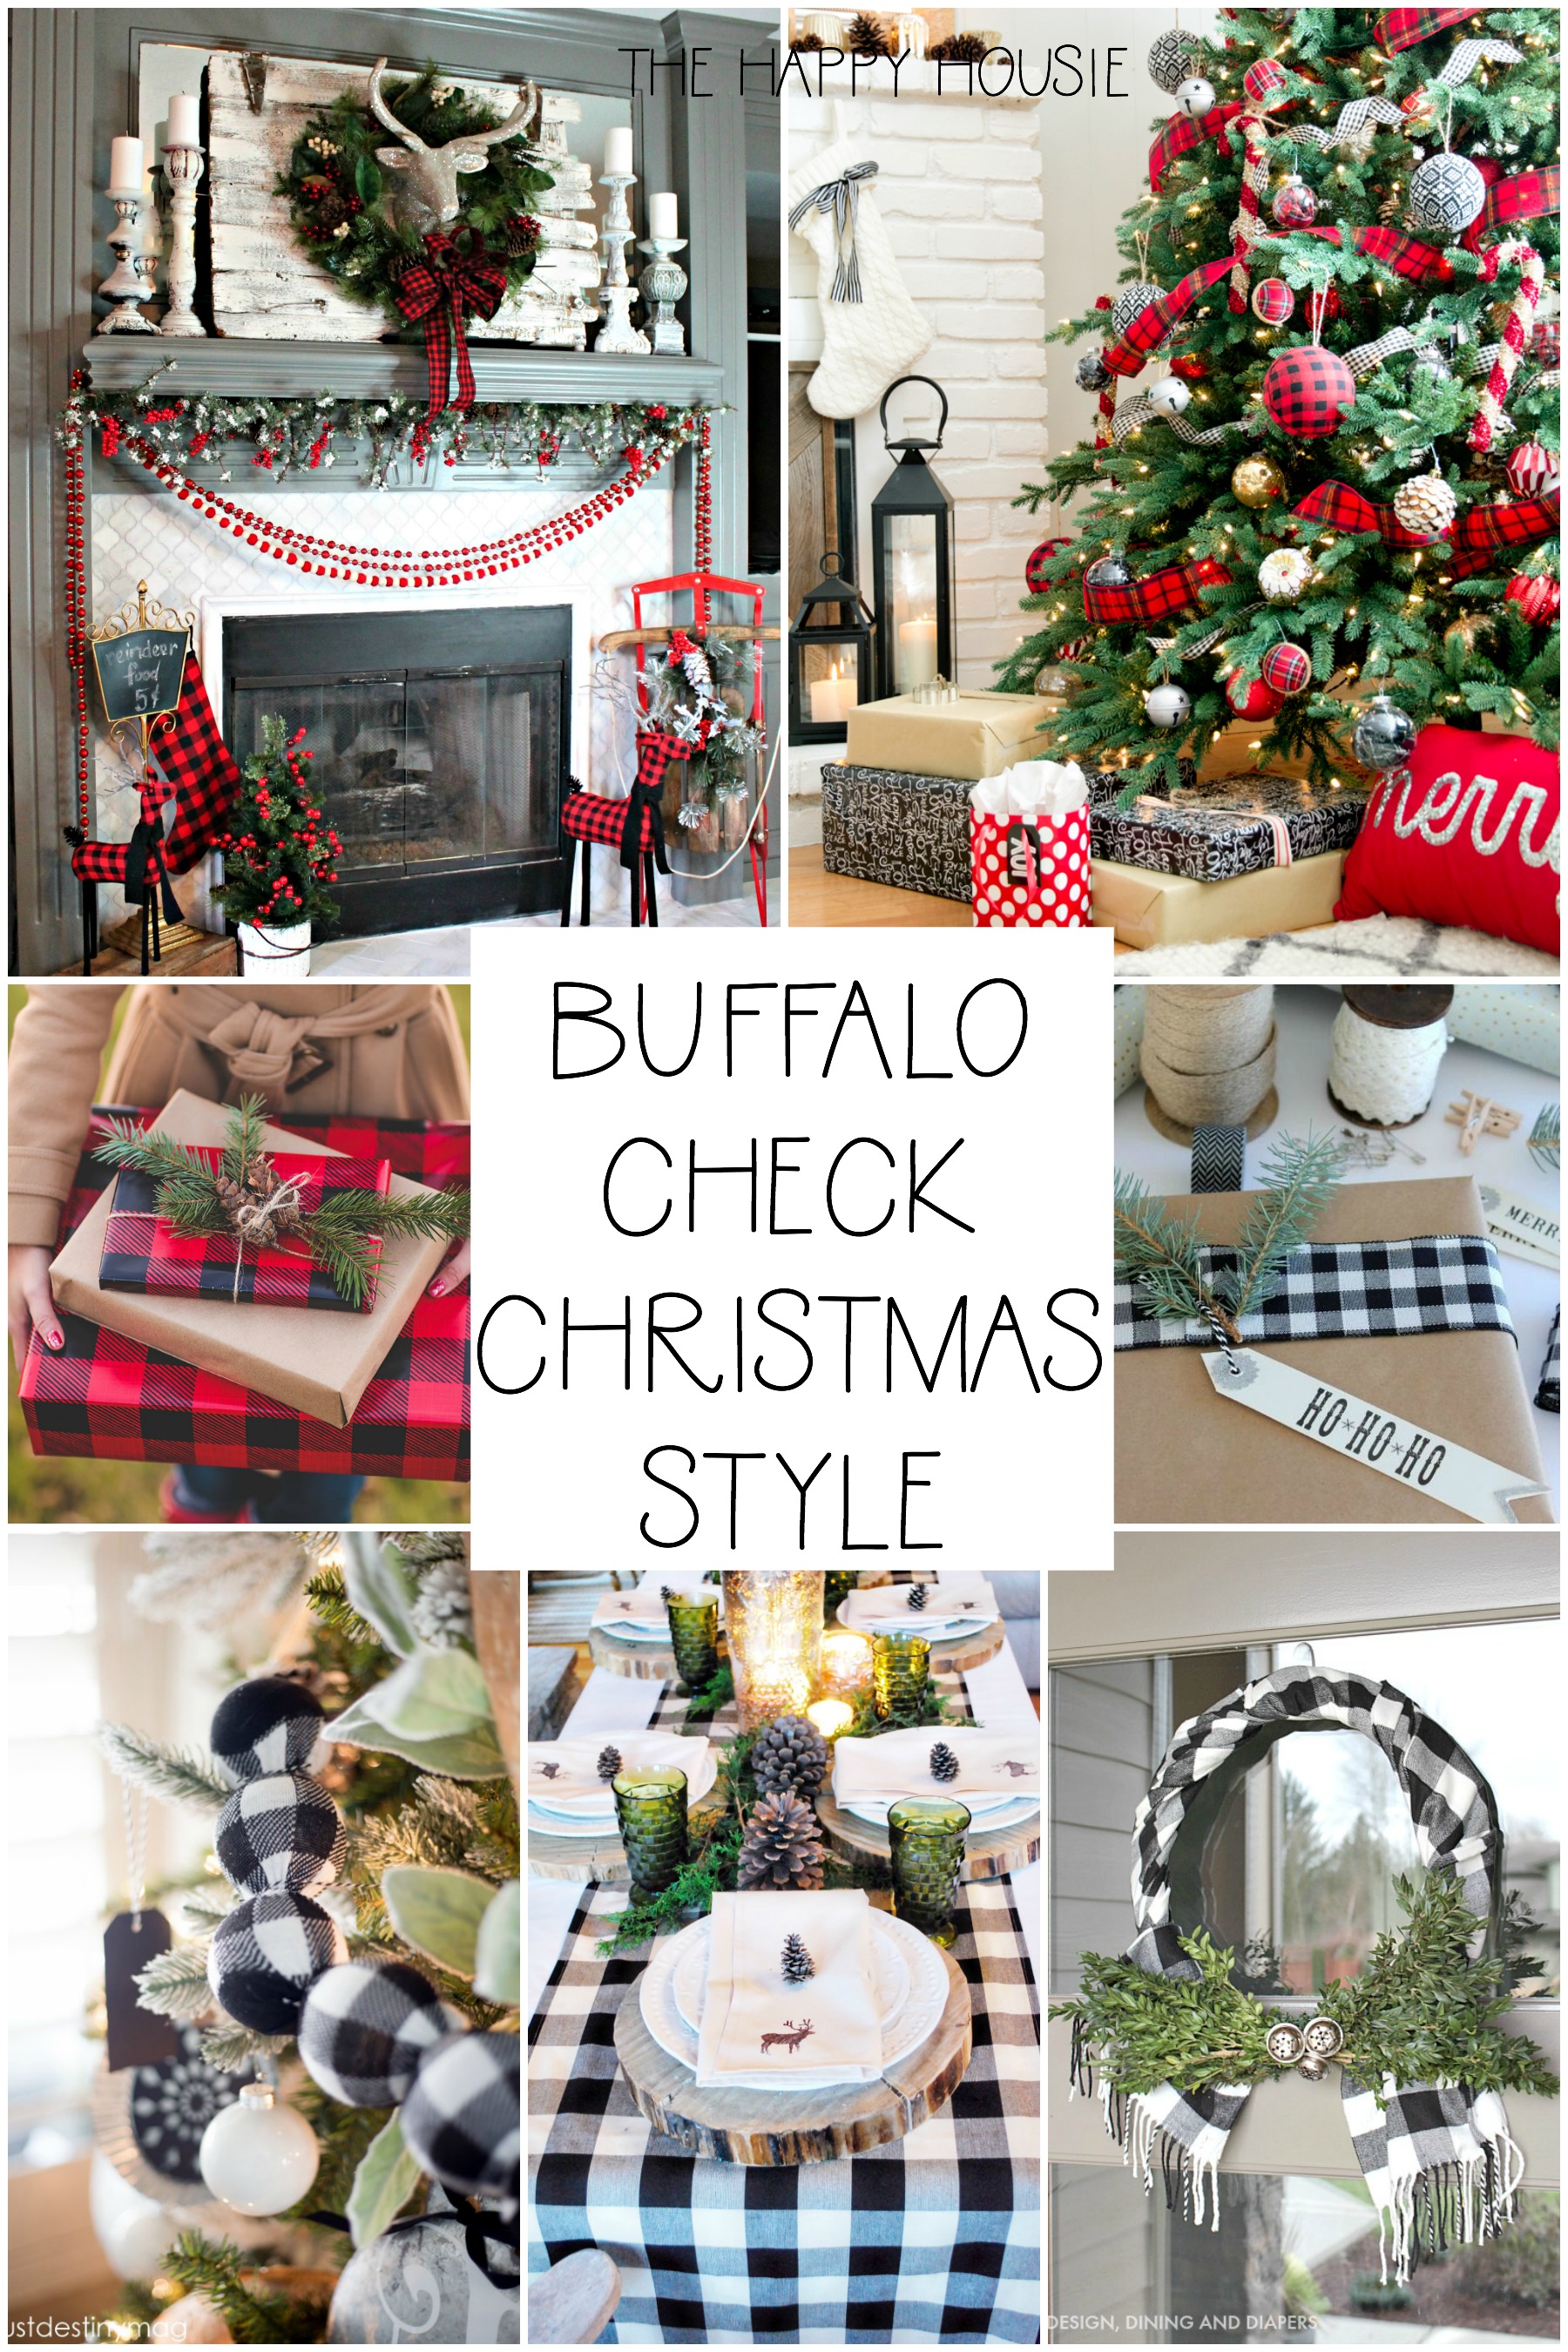 Buffalo Check Christmas Style poster.